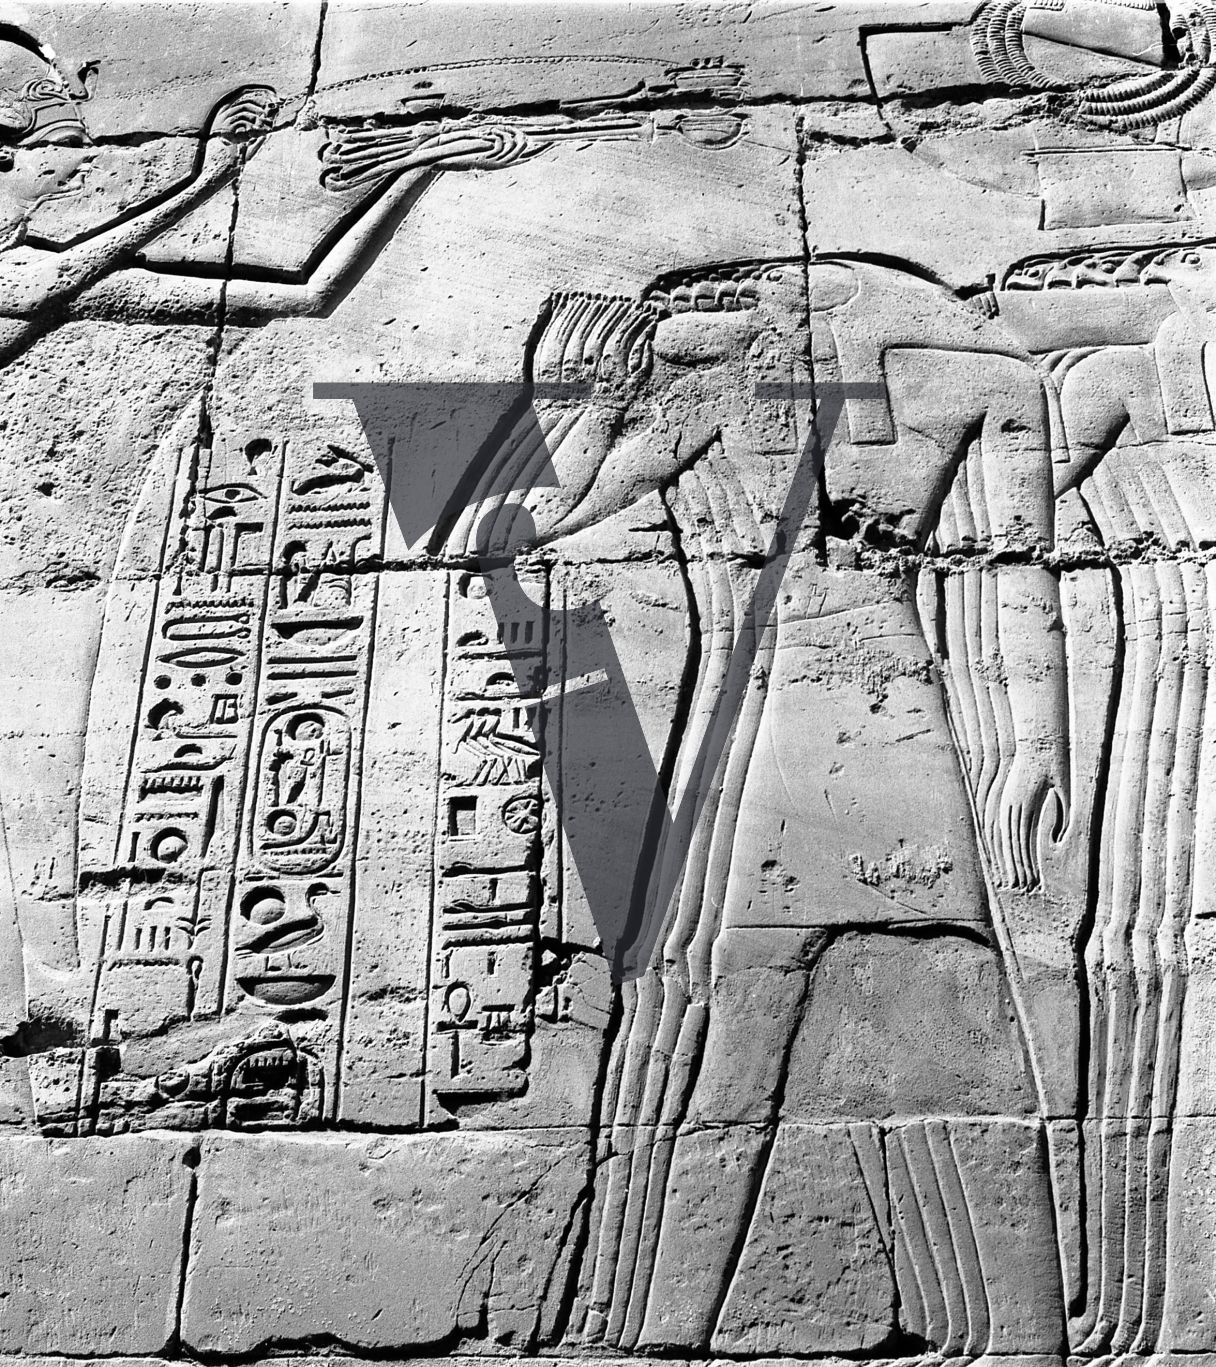 Harrania, Egypt, ancient stonework and hieroglyphics.